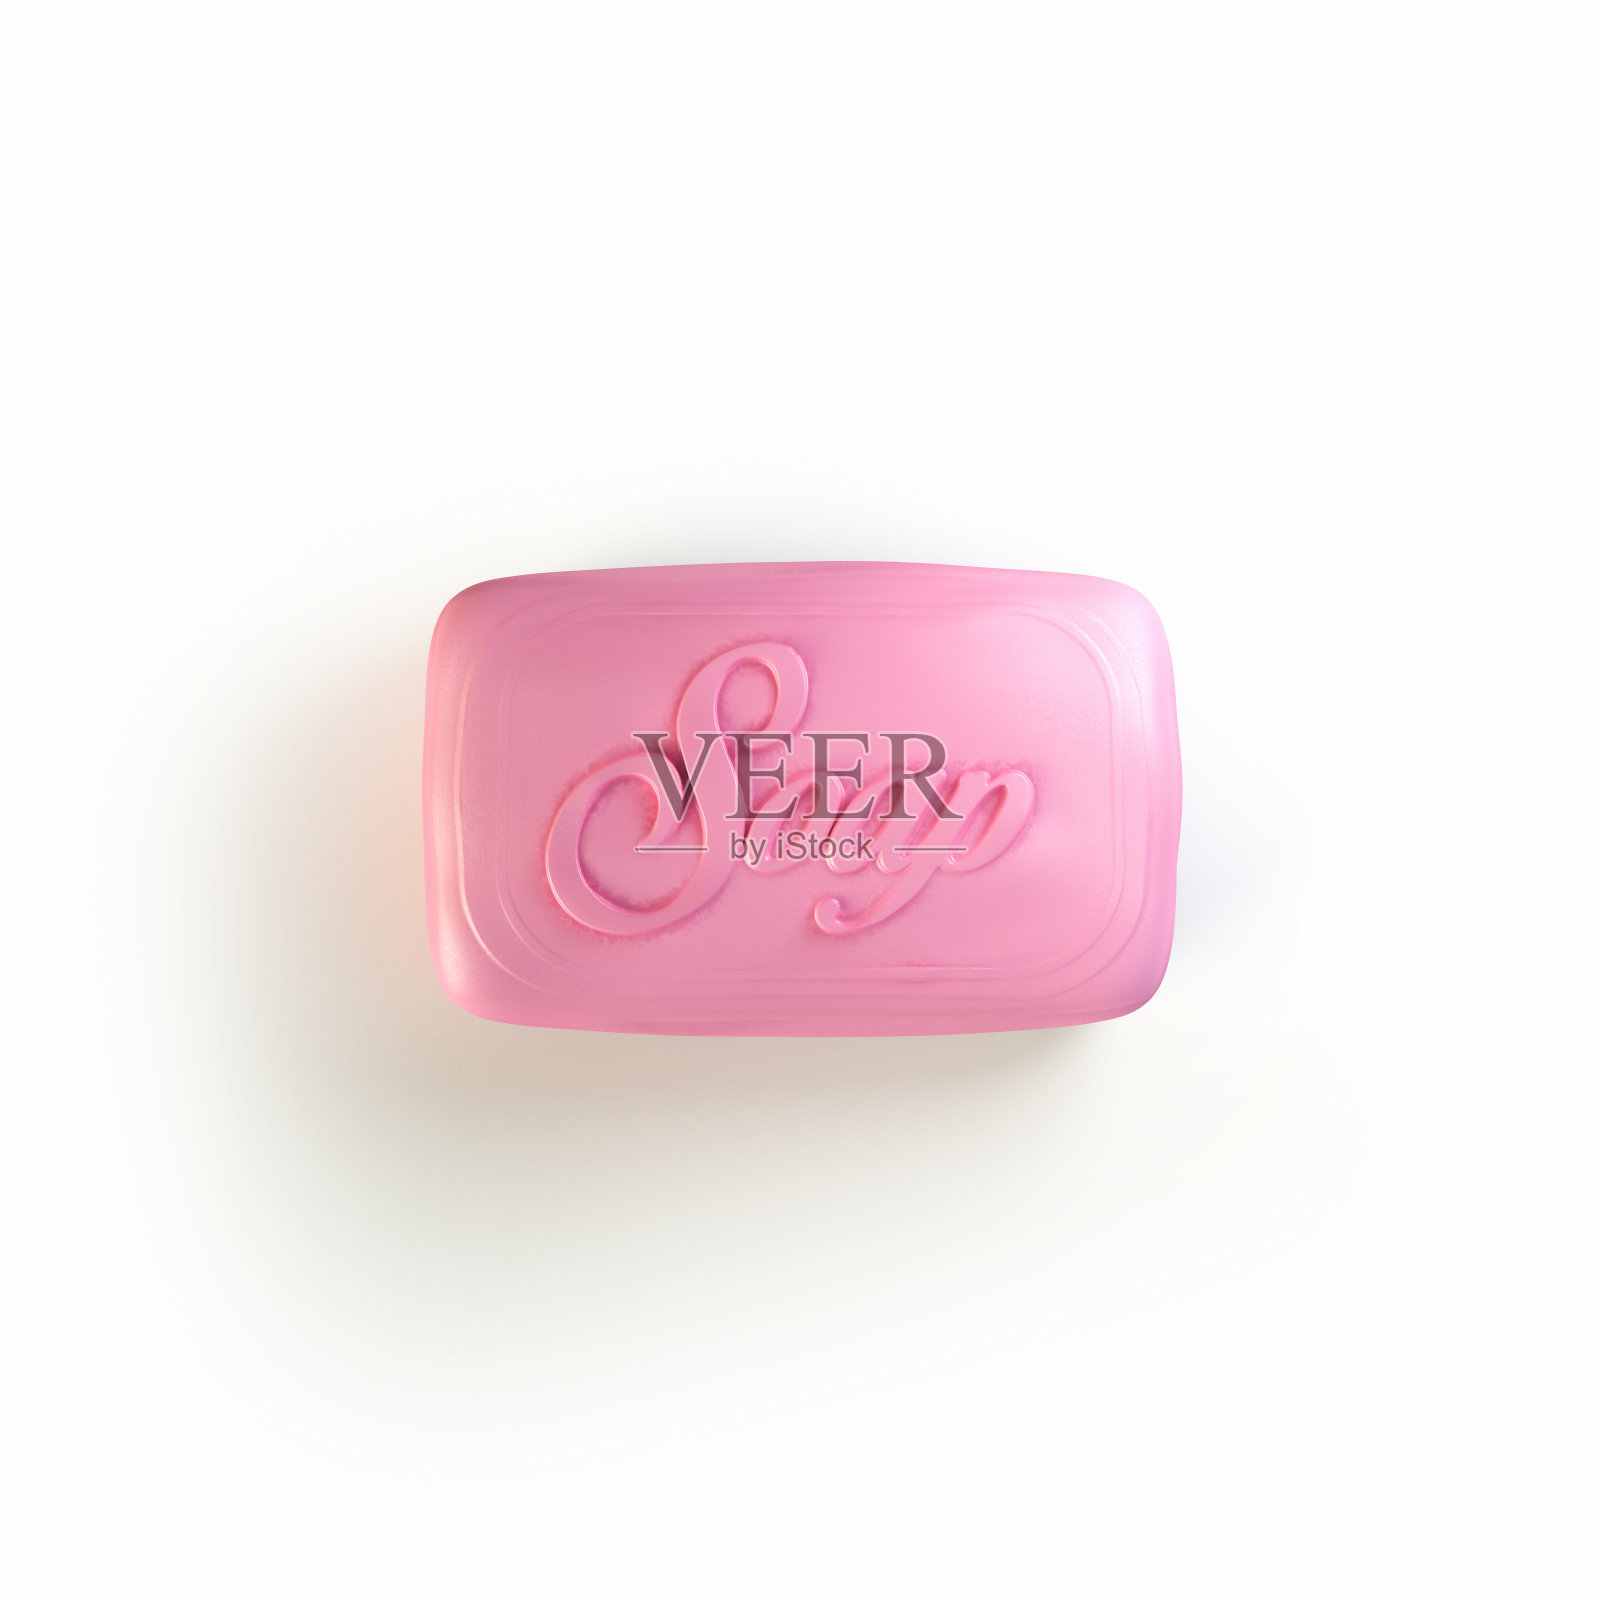 一块粉红色的SOAP 3d渲染照片摄影图片